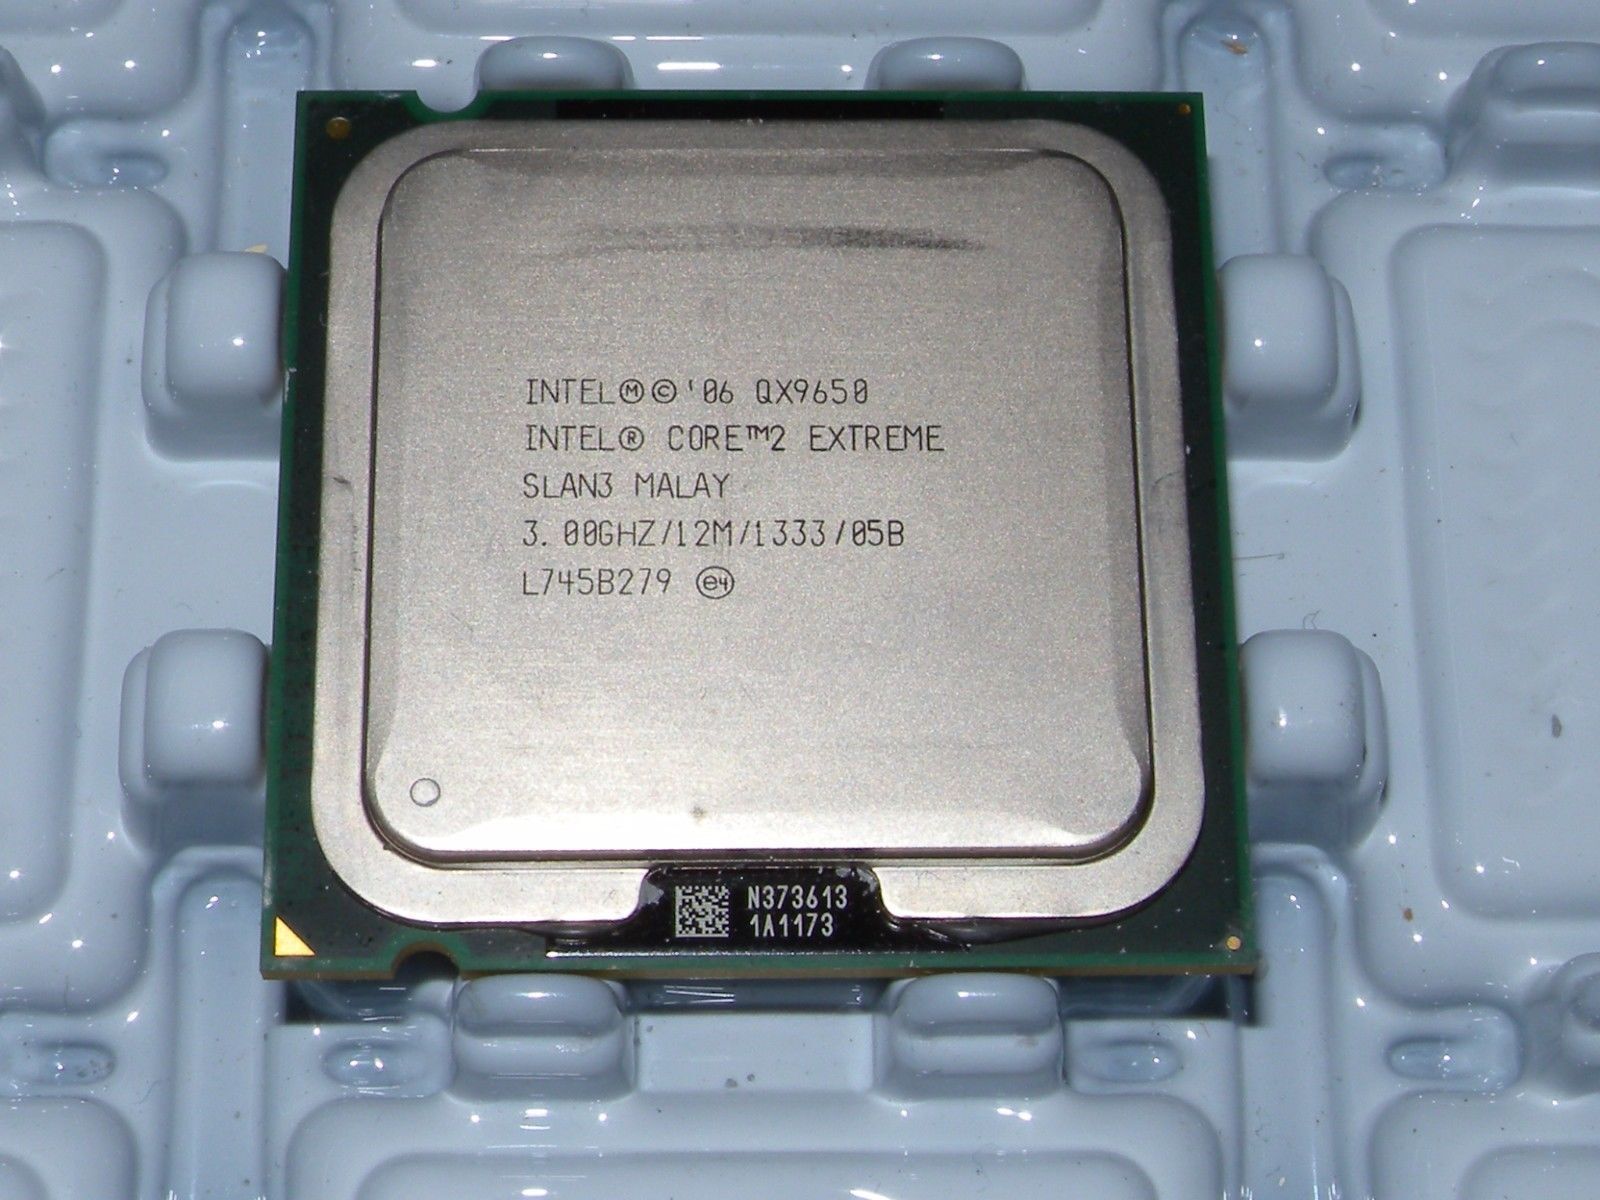 Intel Core 2 Extreme QX9650 3.0GHz SLAN3 12MB LGA775 Quad-Core cpu，very fresh